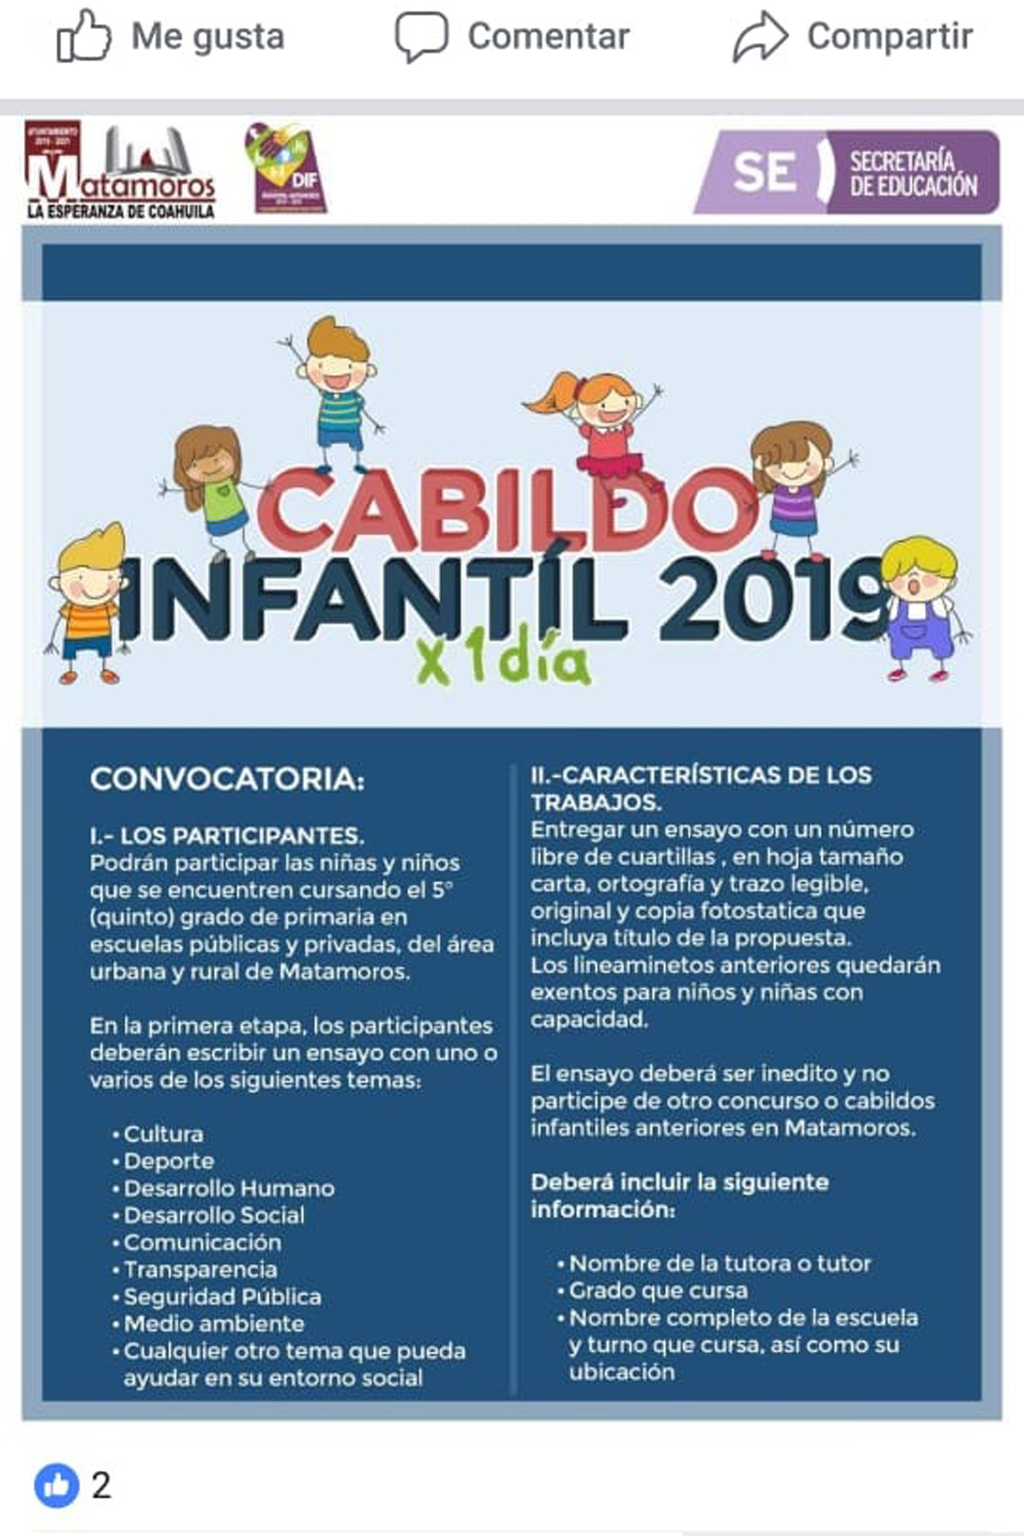 Buscan a candidatos y candidatas para Cabildo Infantil 2019 que se llevará a cabo el próximo 29 de abril.